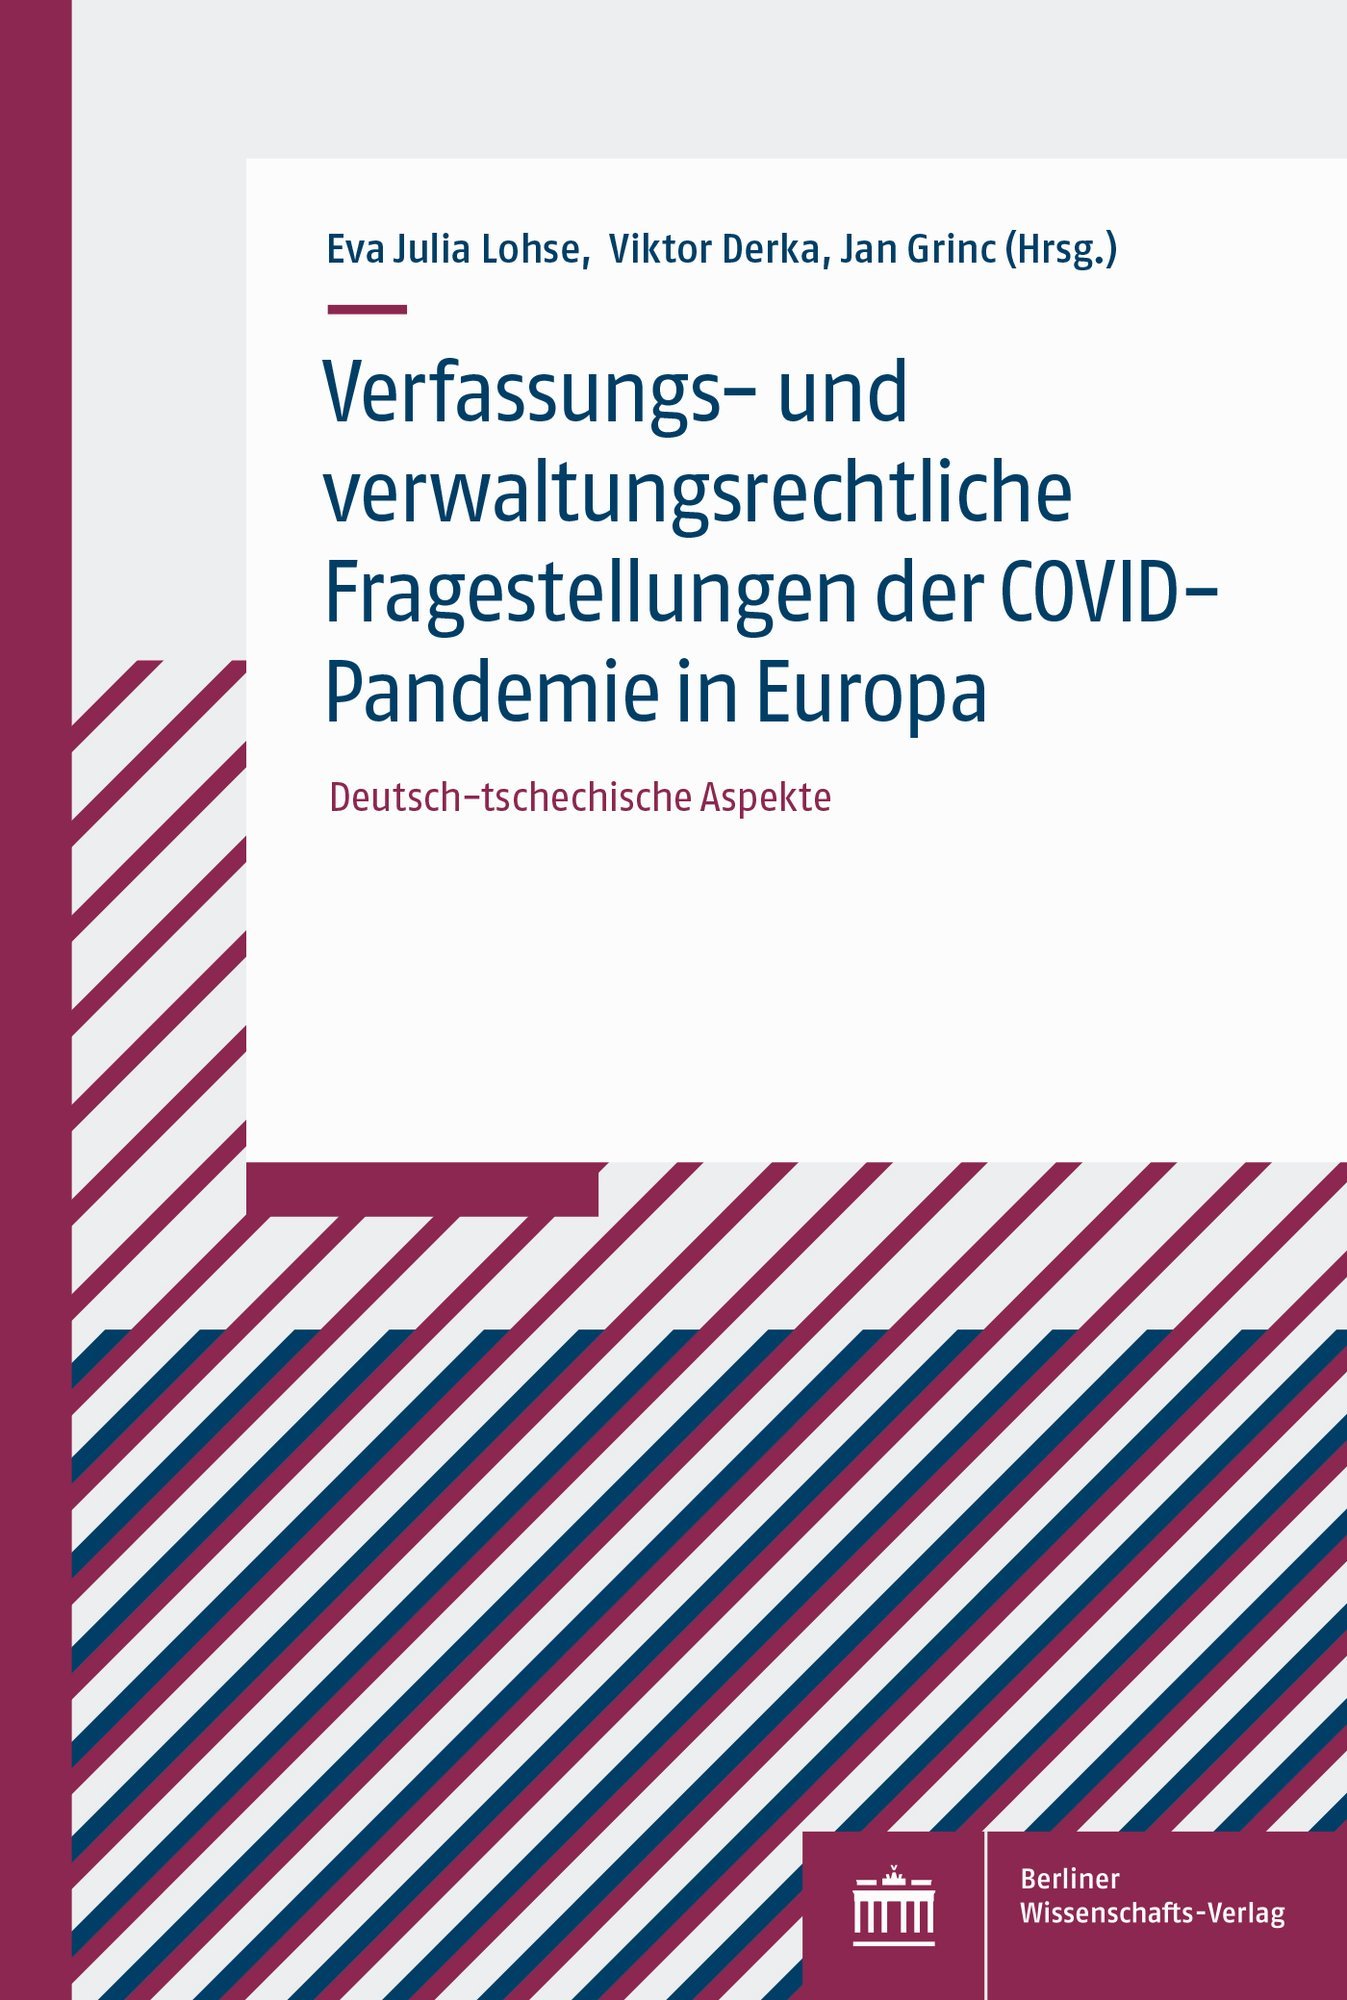 Verfassungs- und verwaltungsrechtliche Fragestellungen der COVID-Pandemie in Europa